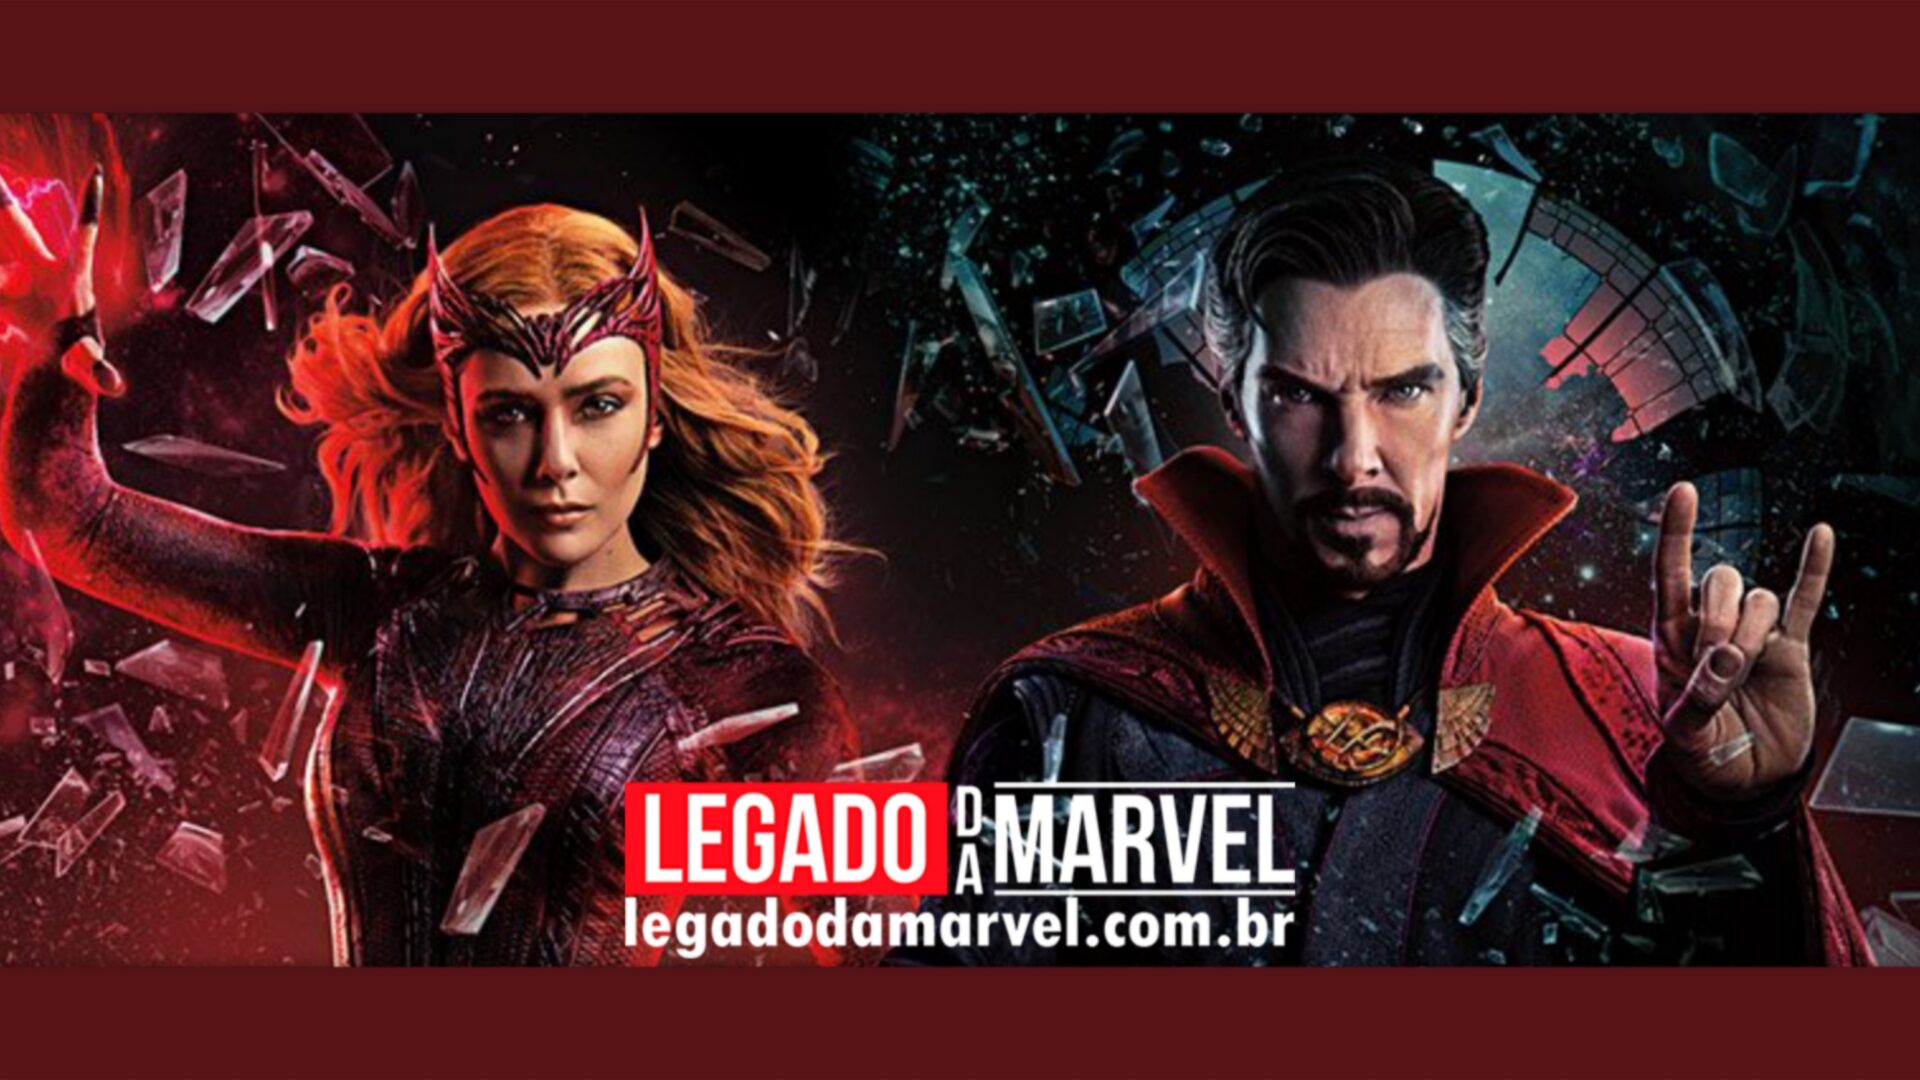 Doutor Estranho 2 dublado: onde assistir o novo filme da Marvel no Brasil